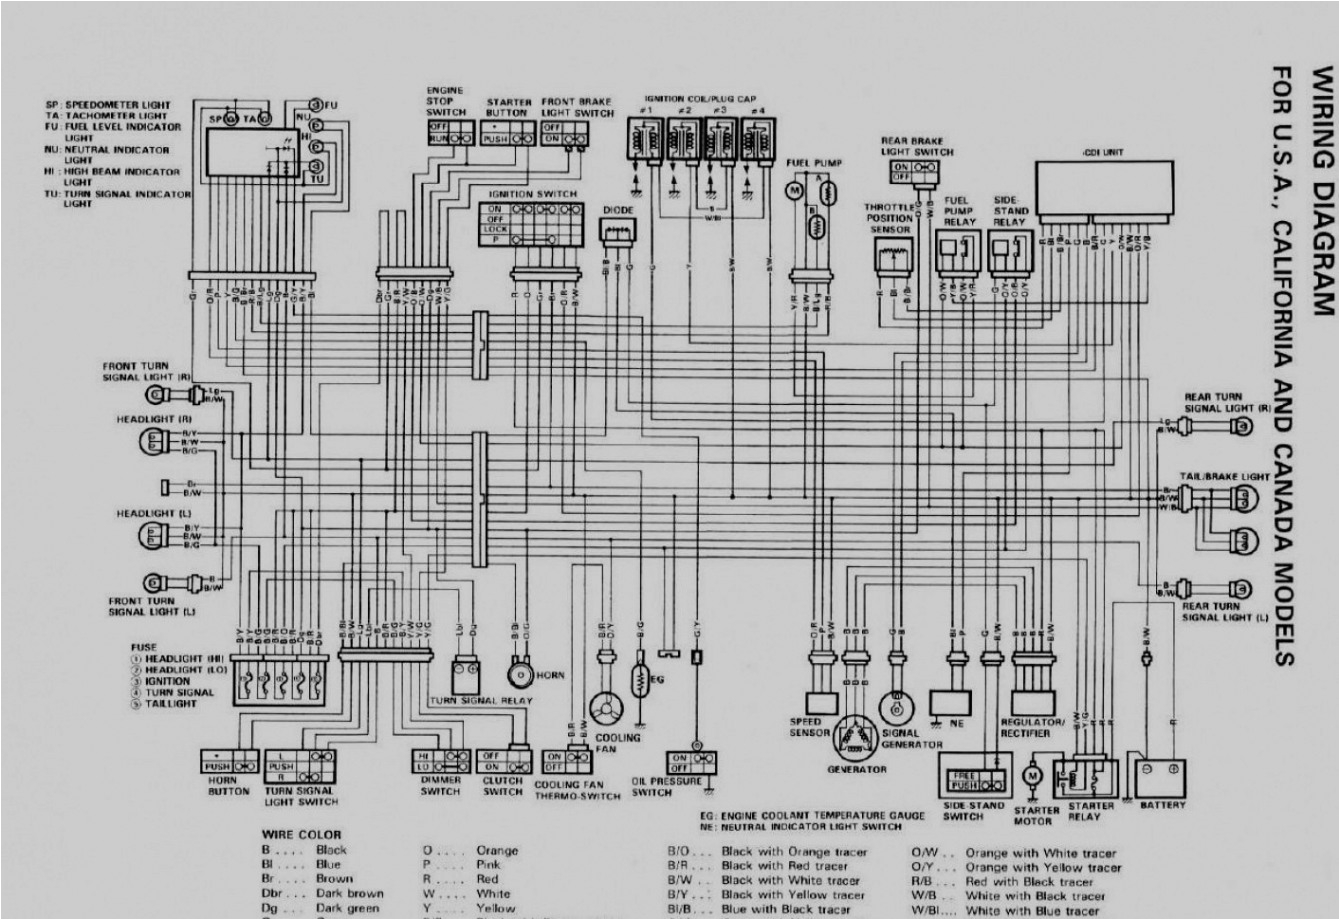 05 gsxr 1000 wiring diagram wiring diagram new 05 gsxr 1000 wiring diagram source suzuki gsxr 750